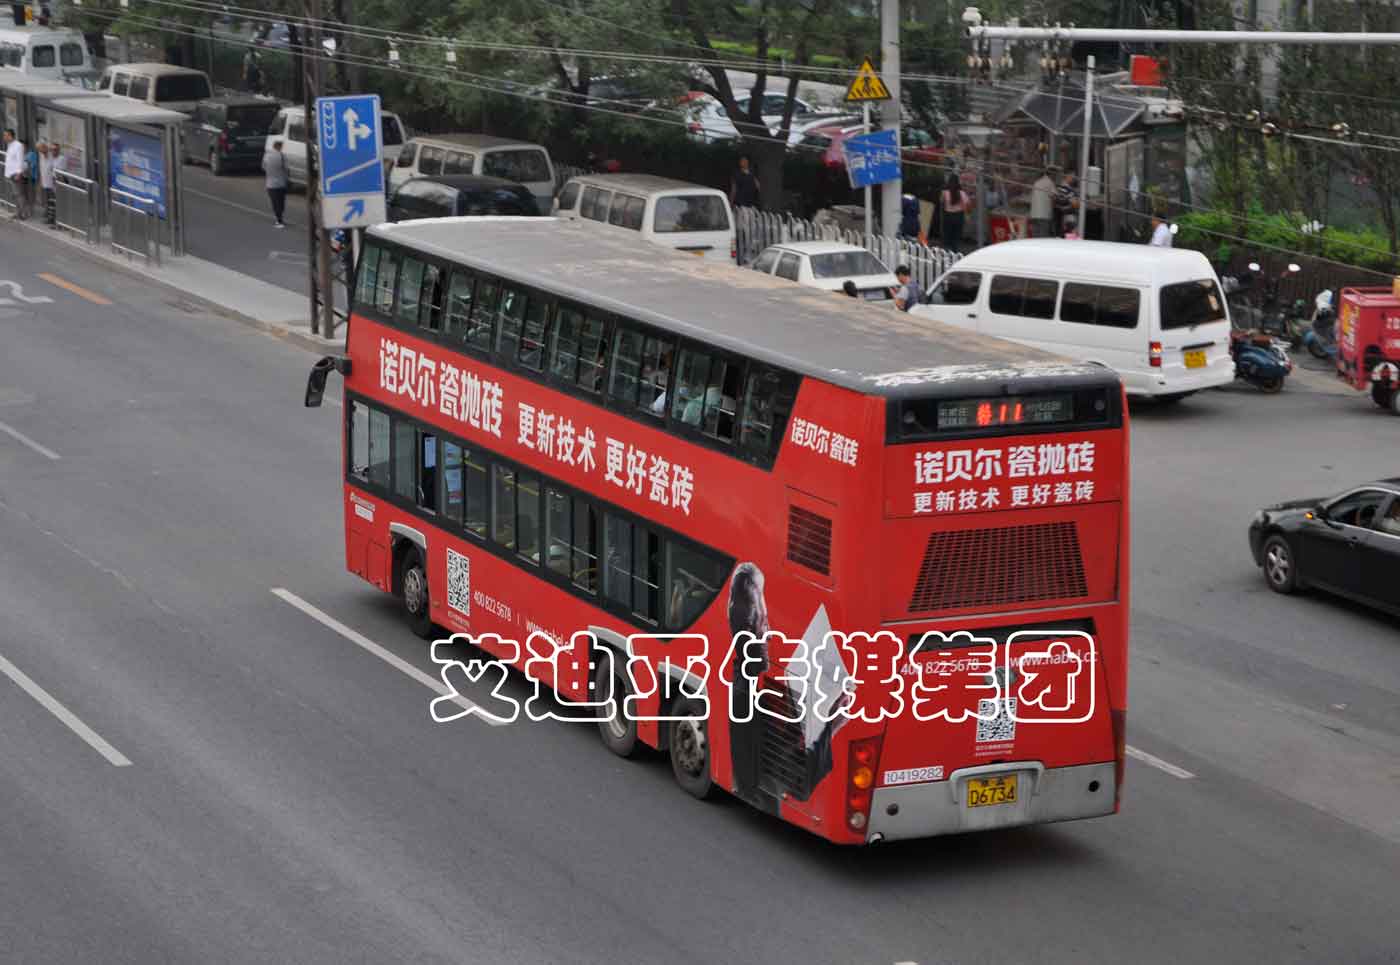 公交车广告案例图片-尊龙凯时